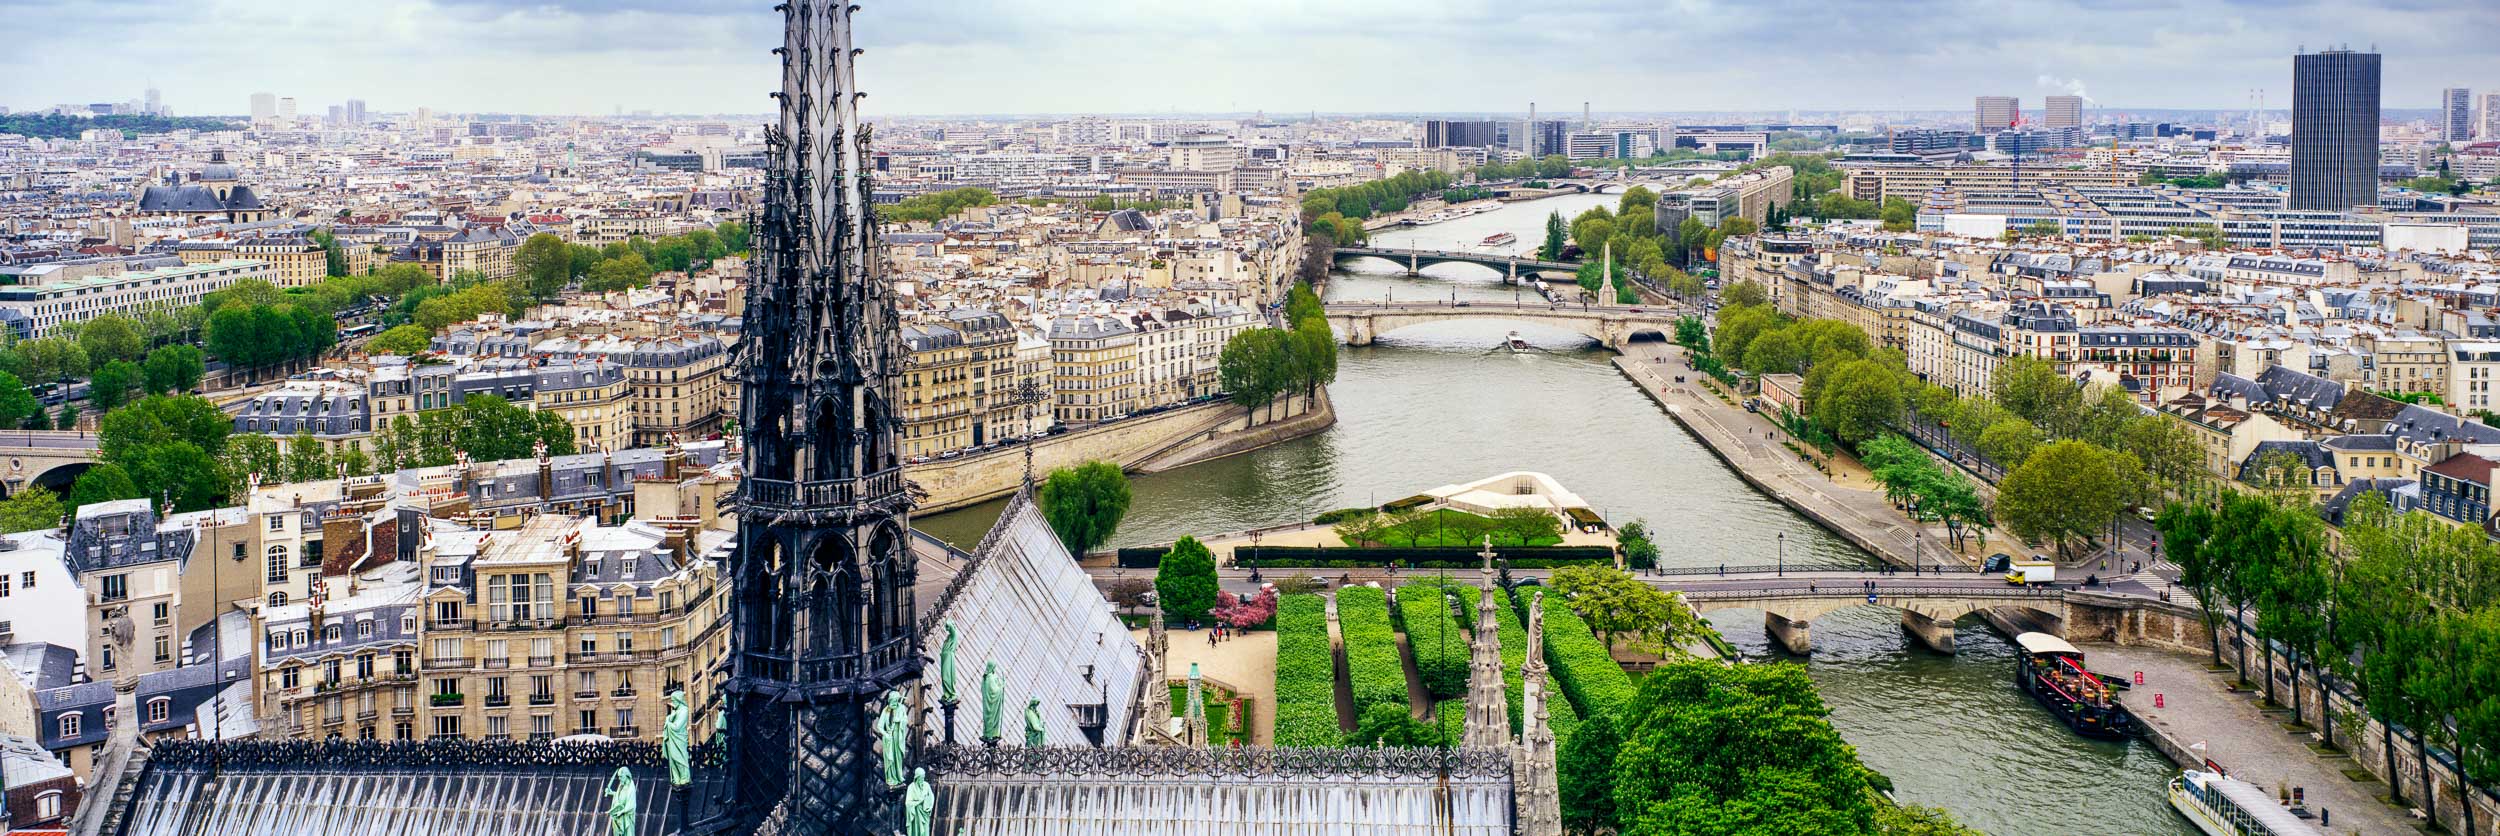 Skyline East View, Notre Dame, Paris